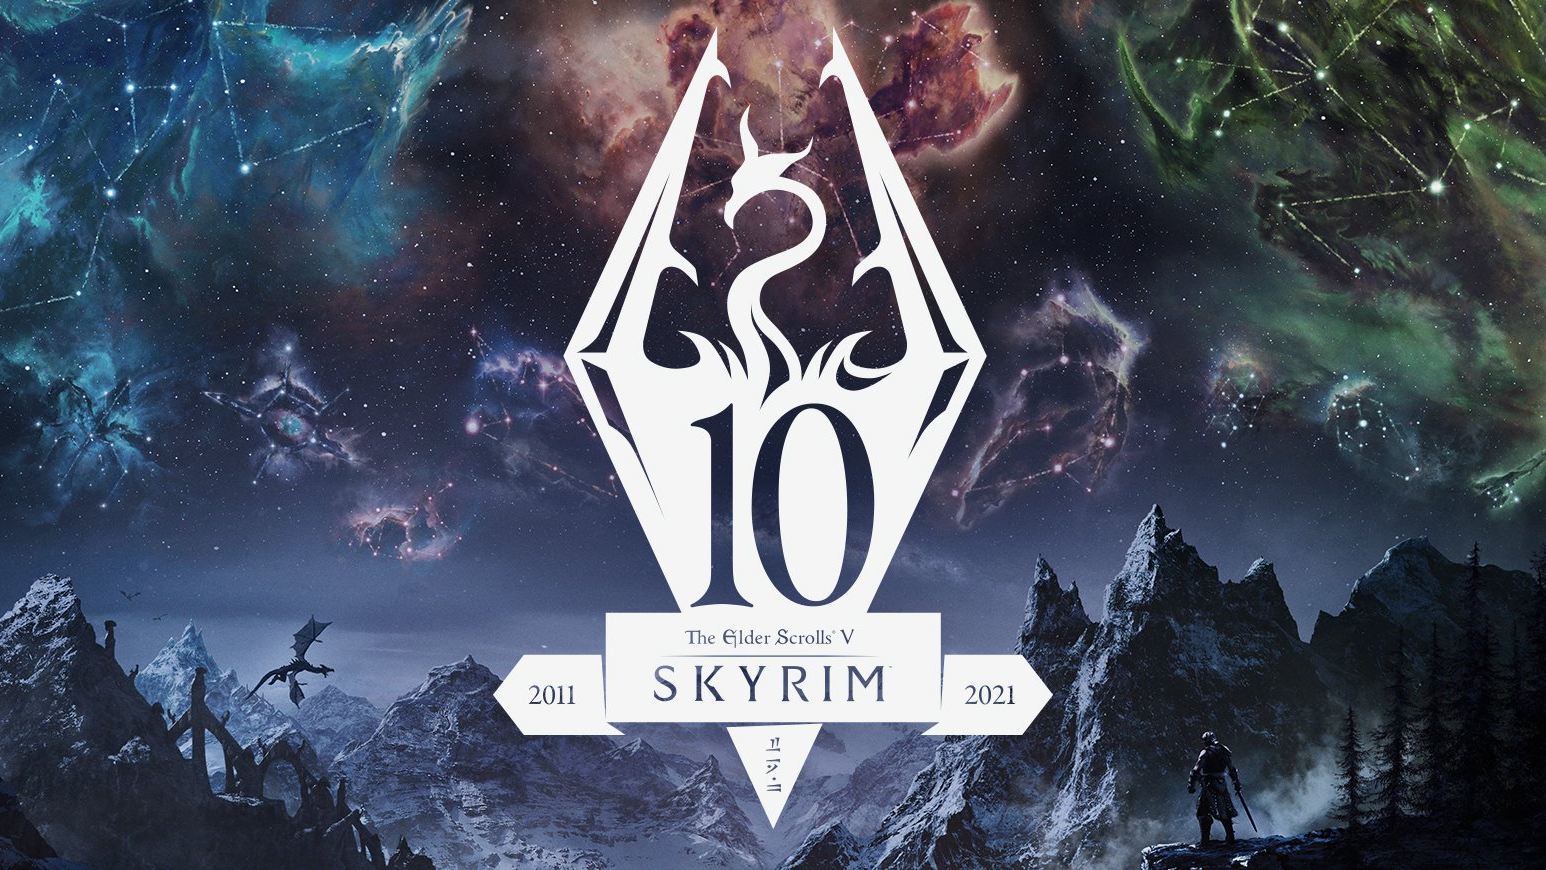 Skyrim получит next-gen обновление в честь 10-летия выпуска игры